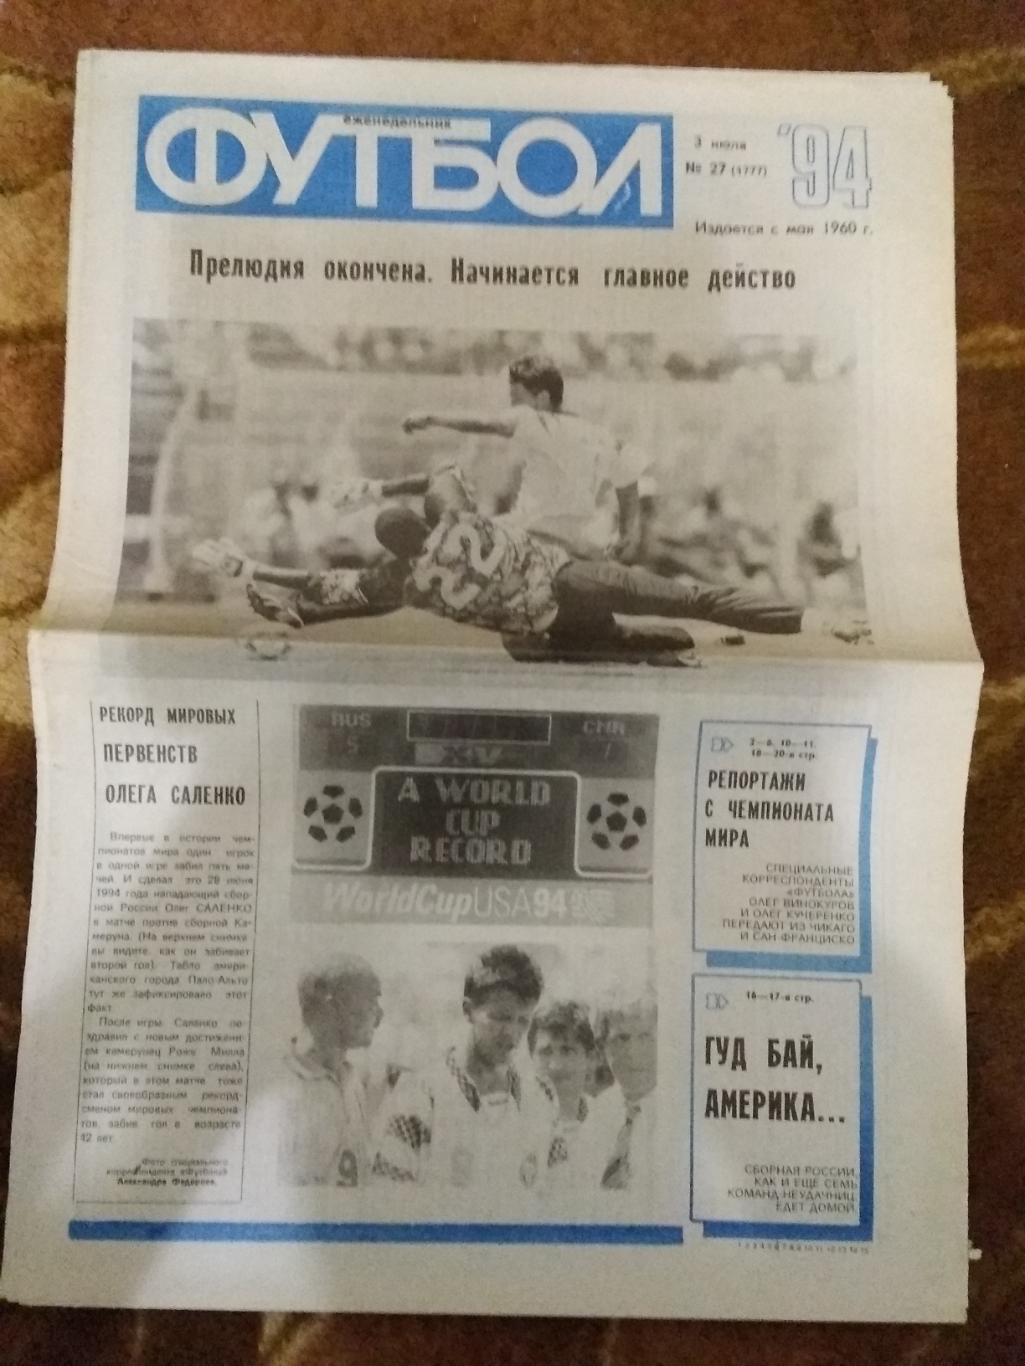 Футбол № 27 1994 г. (ЧМ США).